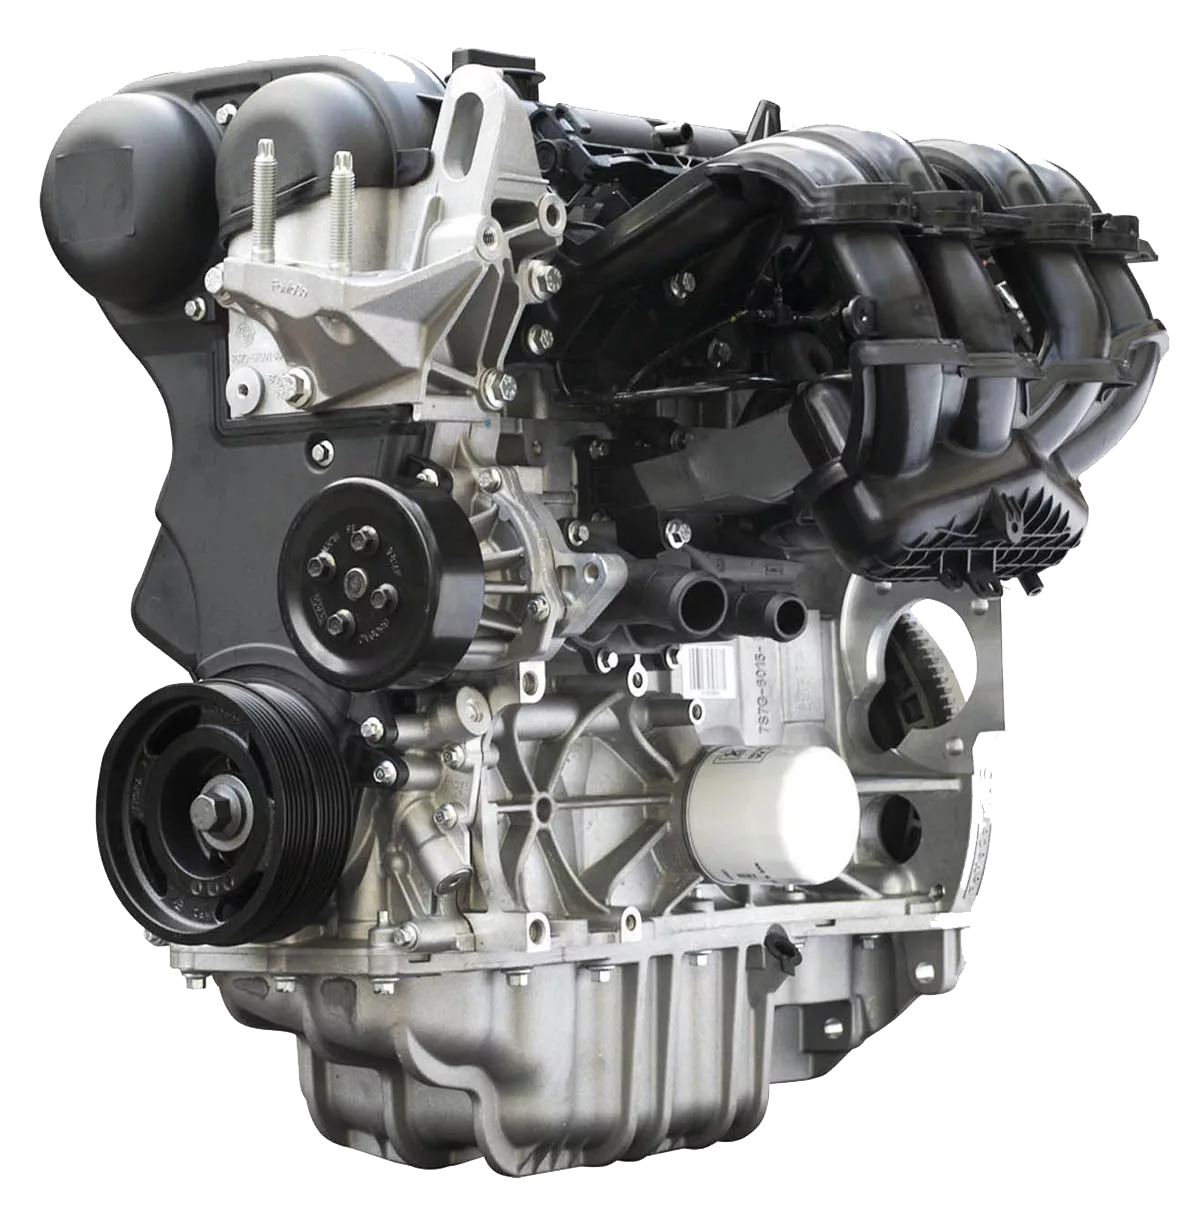 Duratec 16v sigma. Двигатель Форд фокус 1.6 Duratec. Duratec 1.6 ti-VCT 115 Л.С. Двигатель Форд фокус 1 1.6. Мотор Форд фокус 2 1.6 100 л.с.